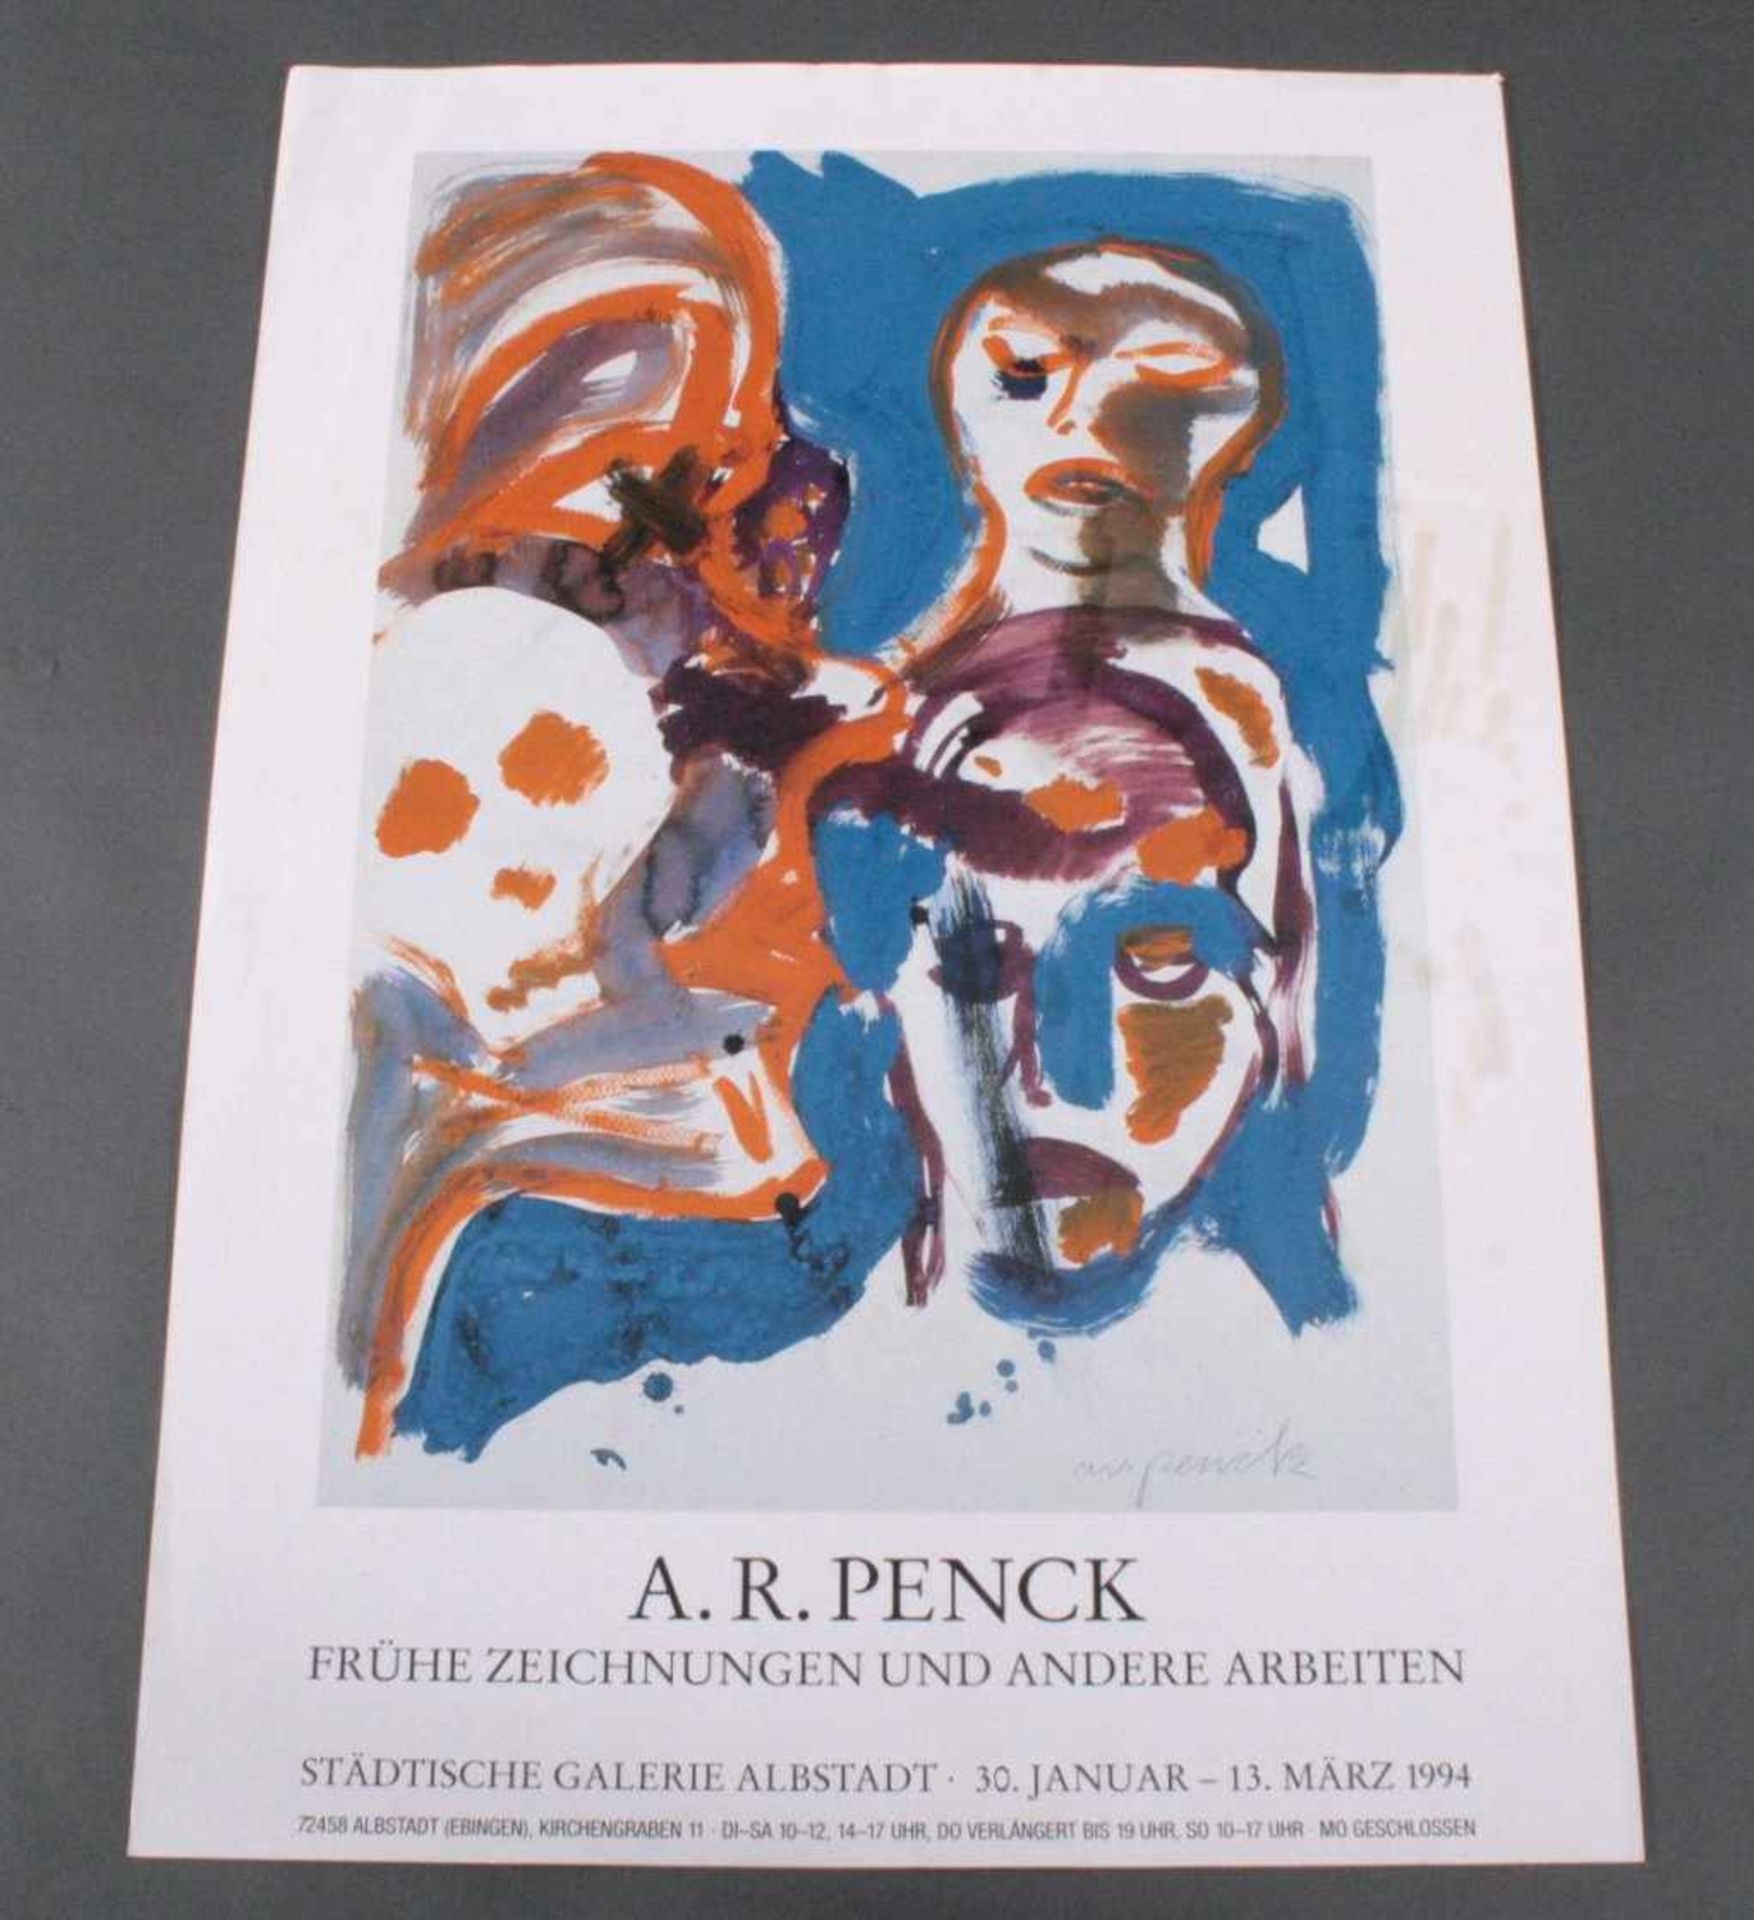 A.R. Penck (1939), PlakatFrühe Zeichnungen und andere Arbeiten, Städtische GalerieAlbstadt 30 Januar